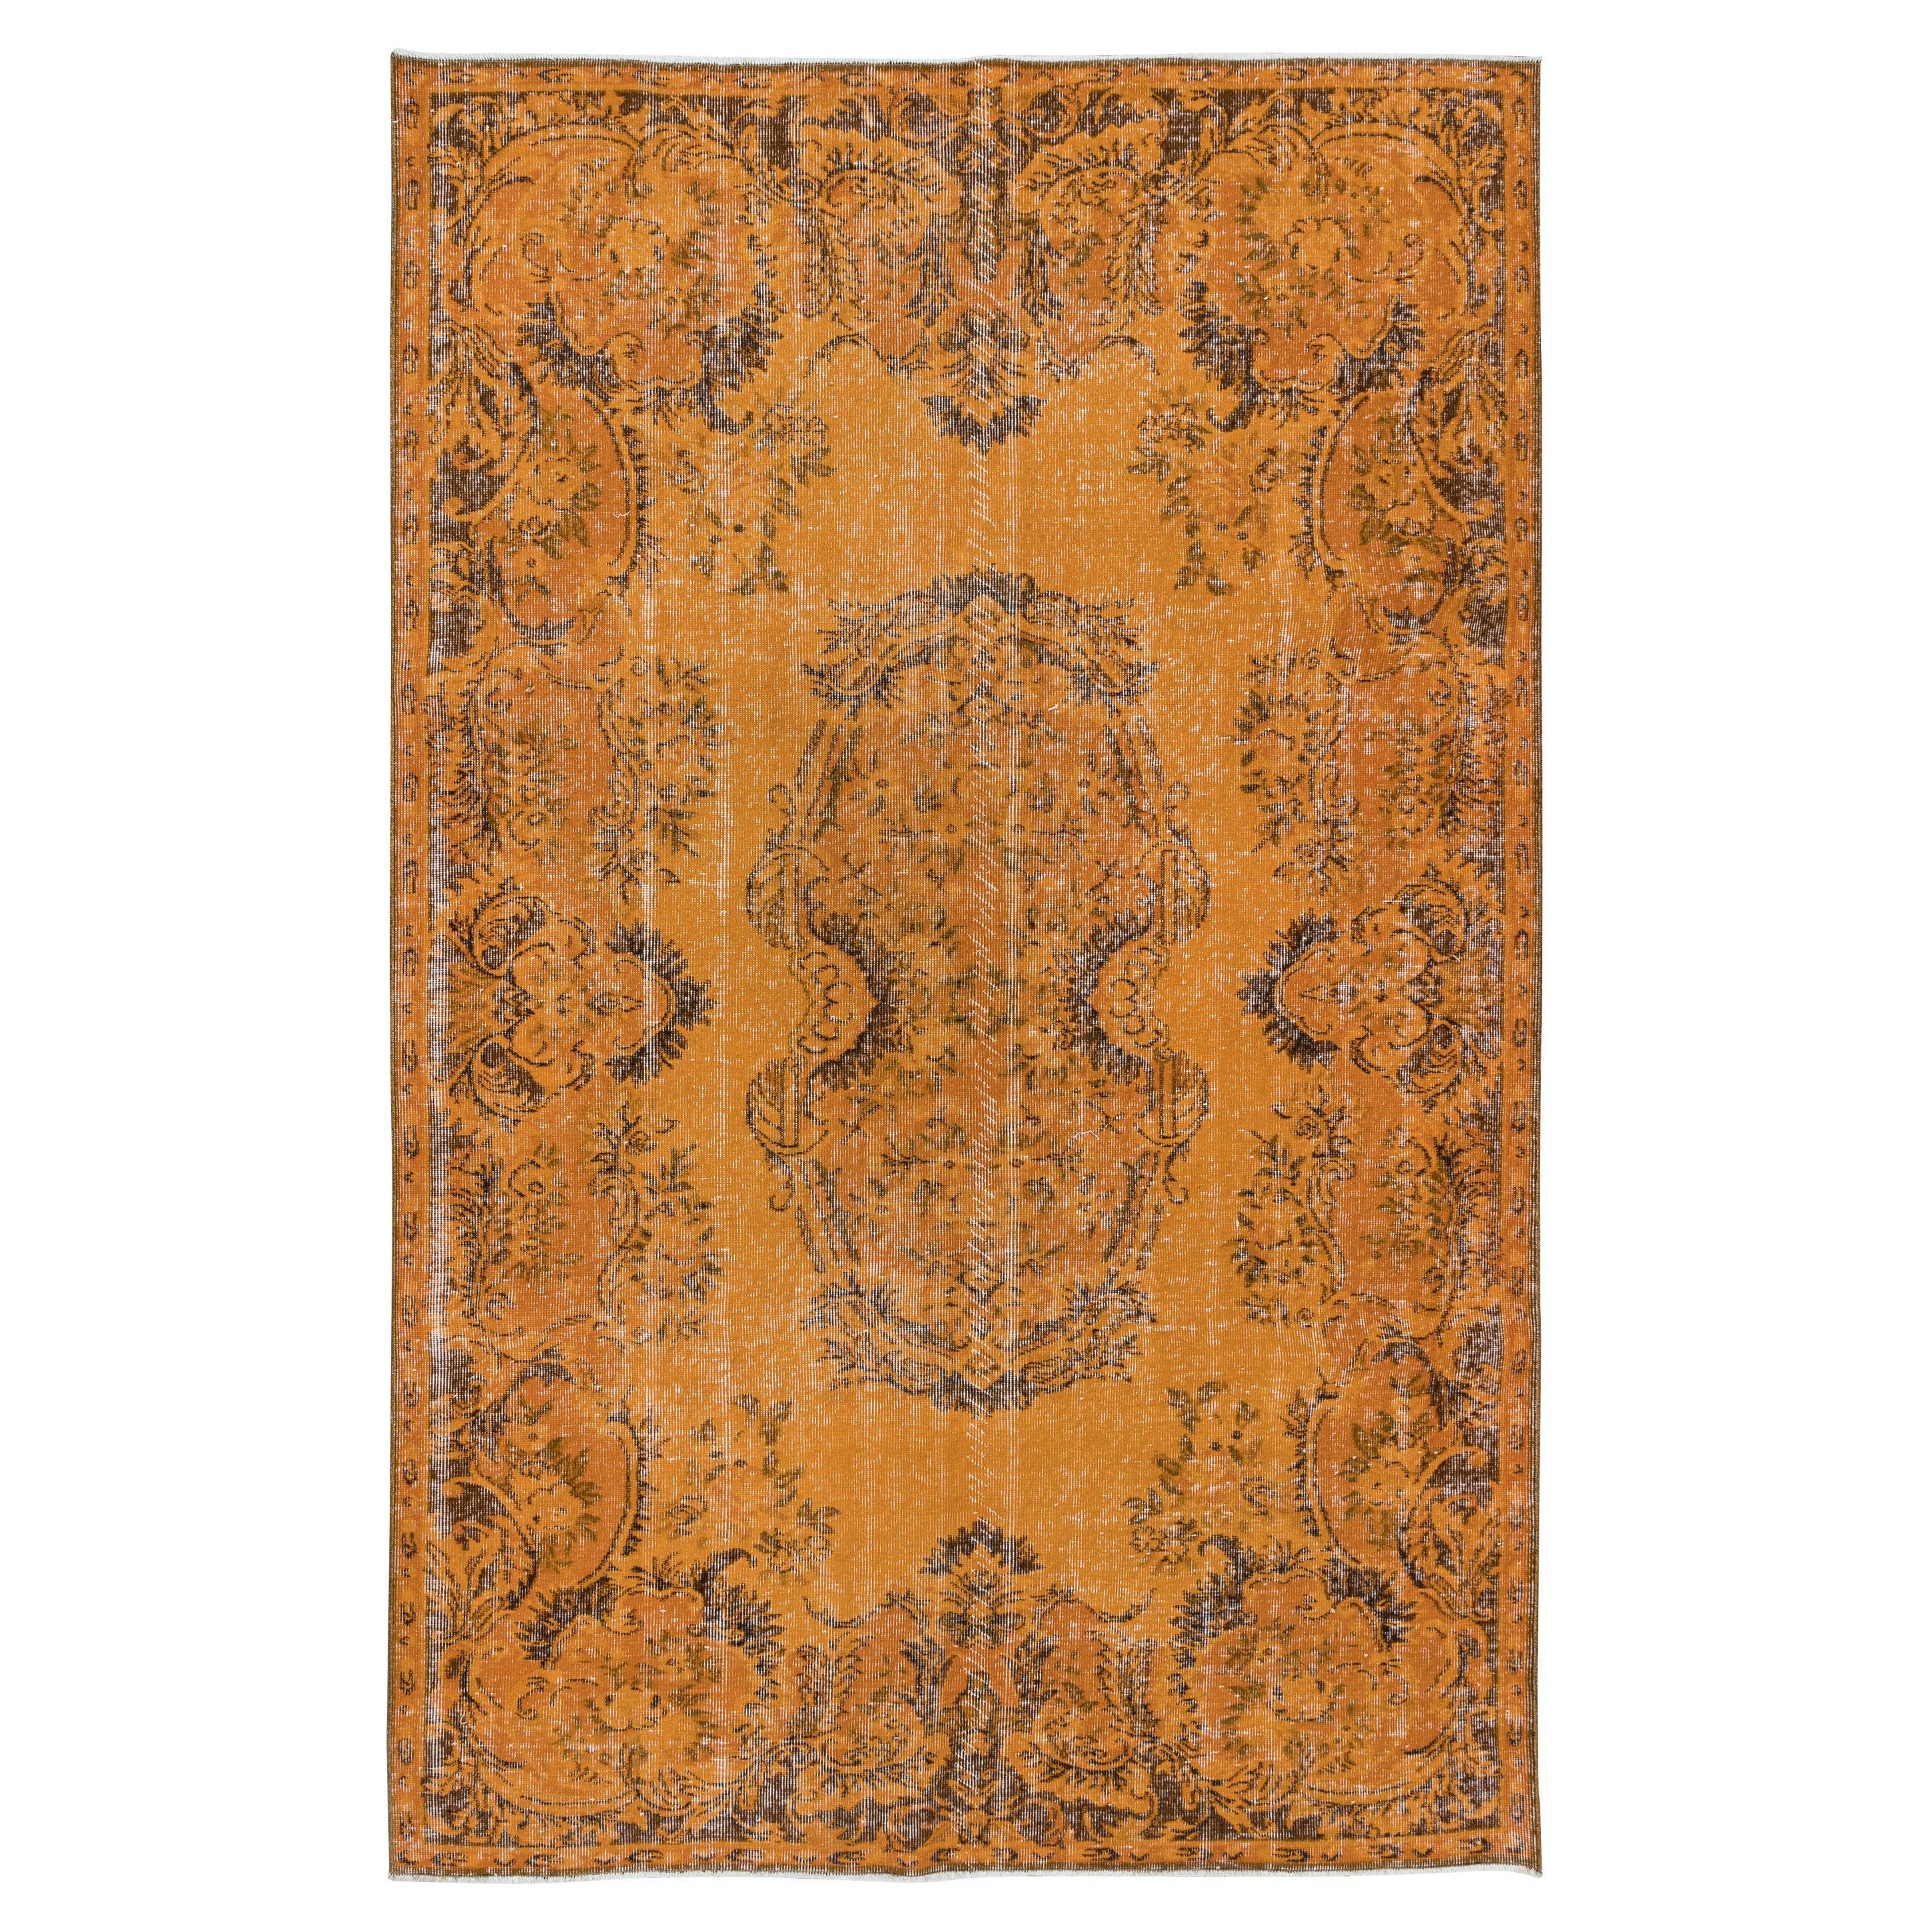 Französischer Aubusson-inspirierter moderner orangefarbener Teppich 6.2x9,3 Ft, handgefertigt in der Türkei